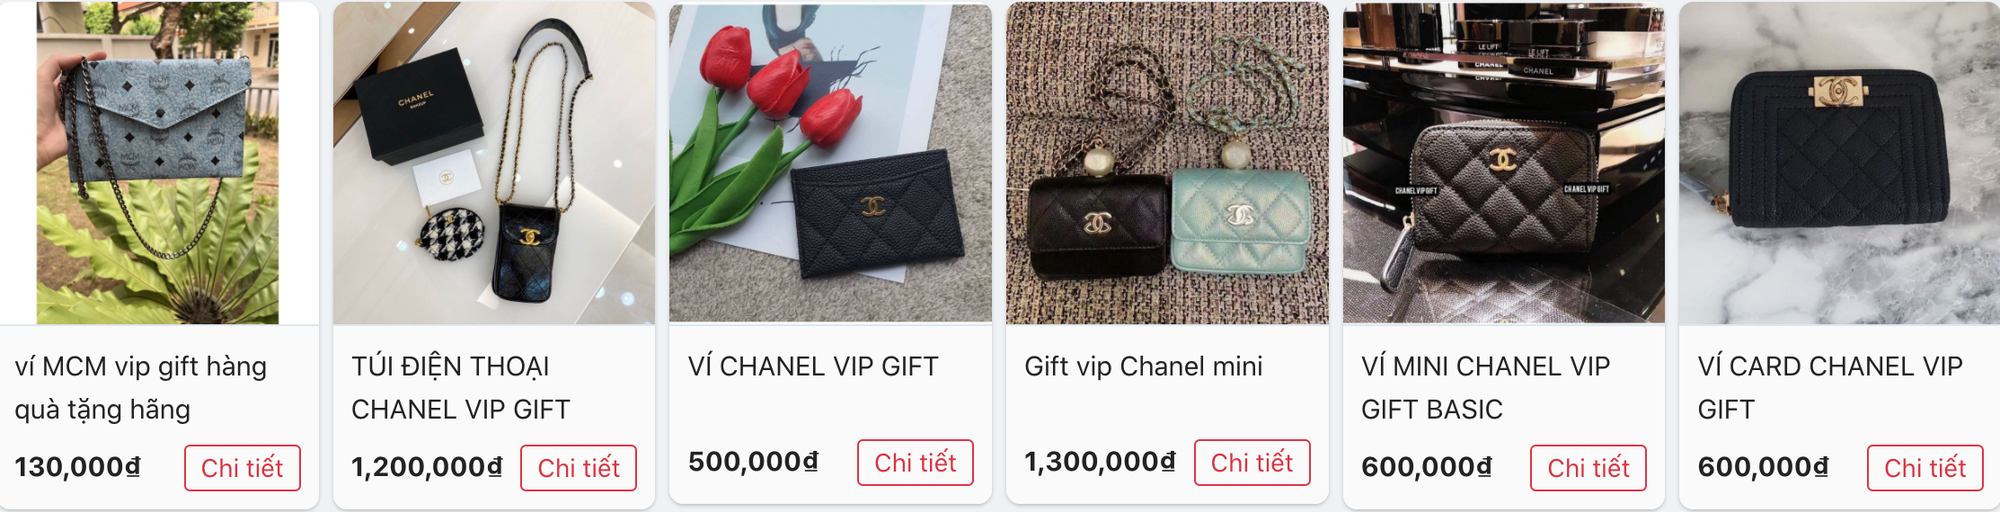 Mua VIP gift Chanel, Dior, Louis Vuitton... với giá chỉ từ 500k đến vài triệu: Muốn lừa tui hả? ĐỪNG MƠ!  - Ảnh 3.